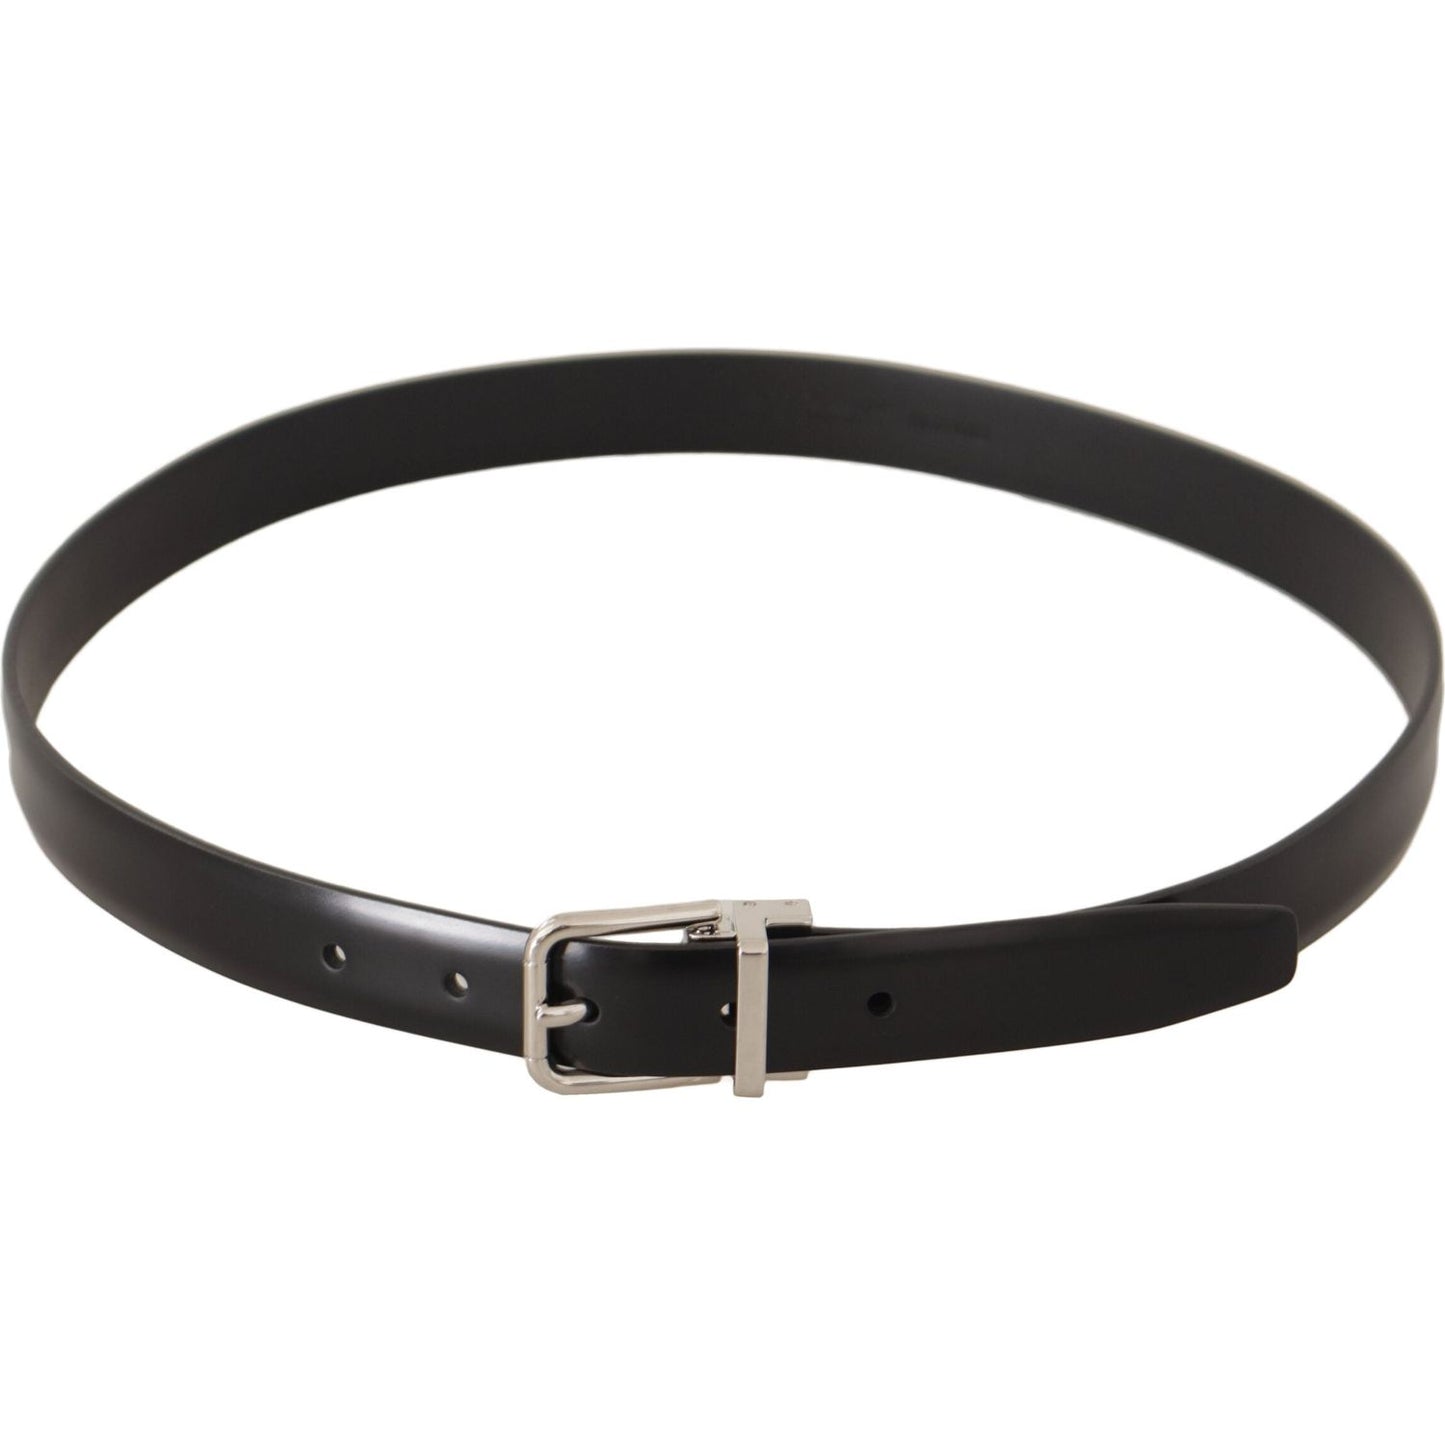 Dolce & Gabbana Elegant Black Leather Belt with Metal Buckle black-calf-leather-silver-metal-logo-buckle-belt IMG_0572-scaled-3af6026d-935.jpg